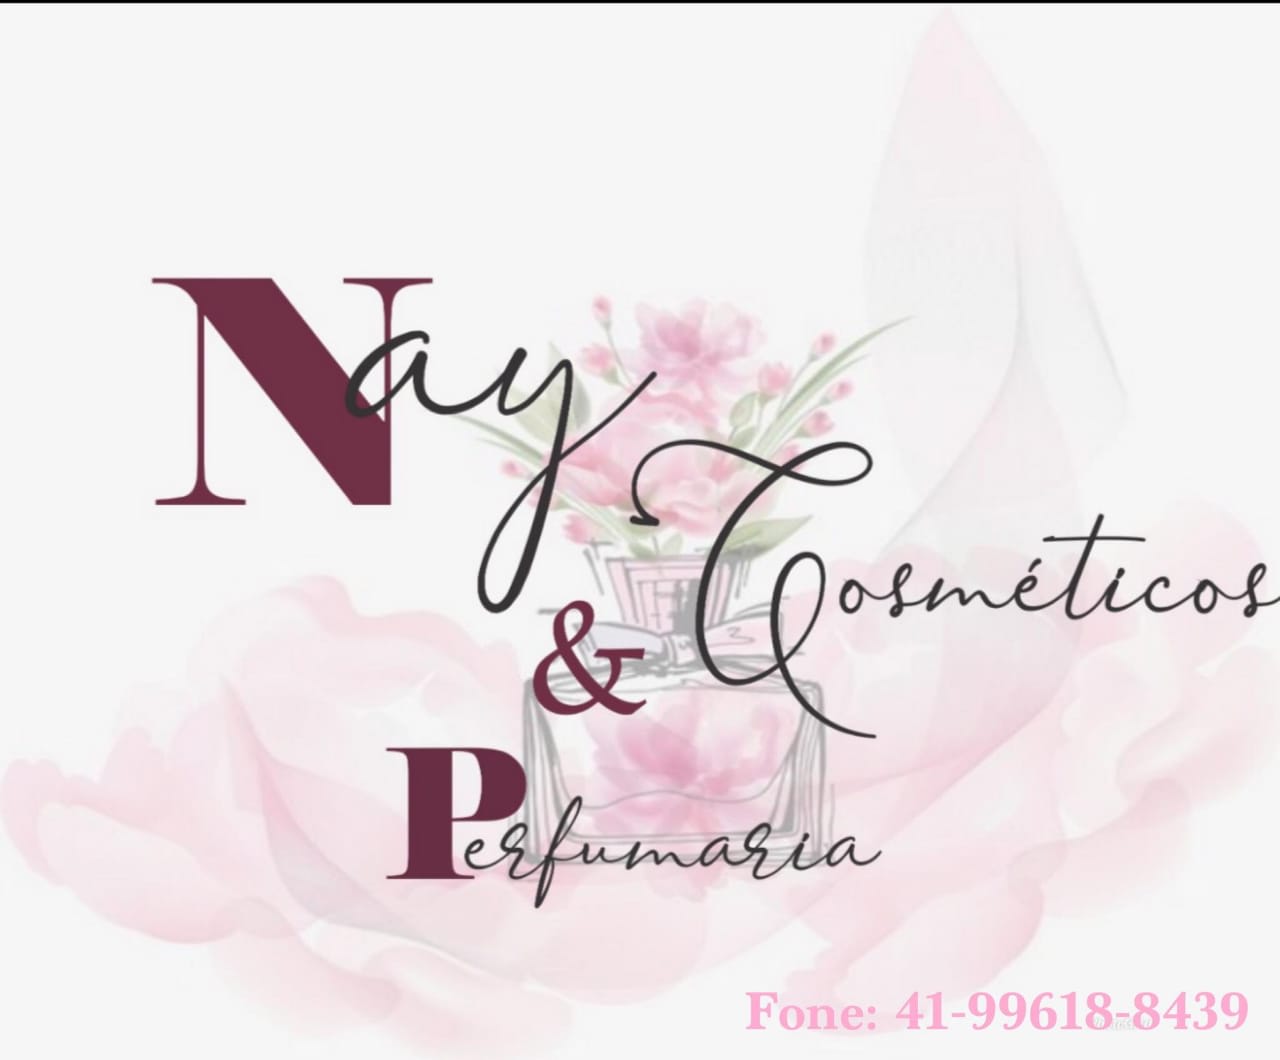 Nay Cosmeticos e Perfumaria